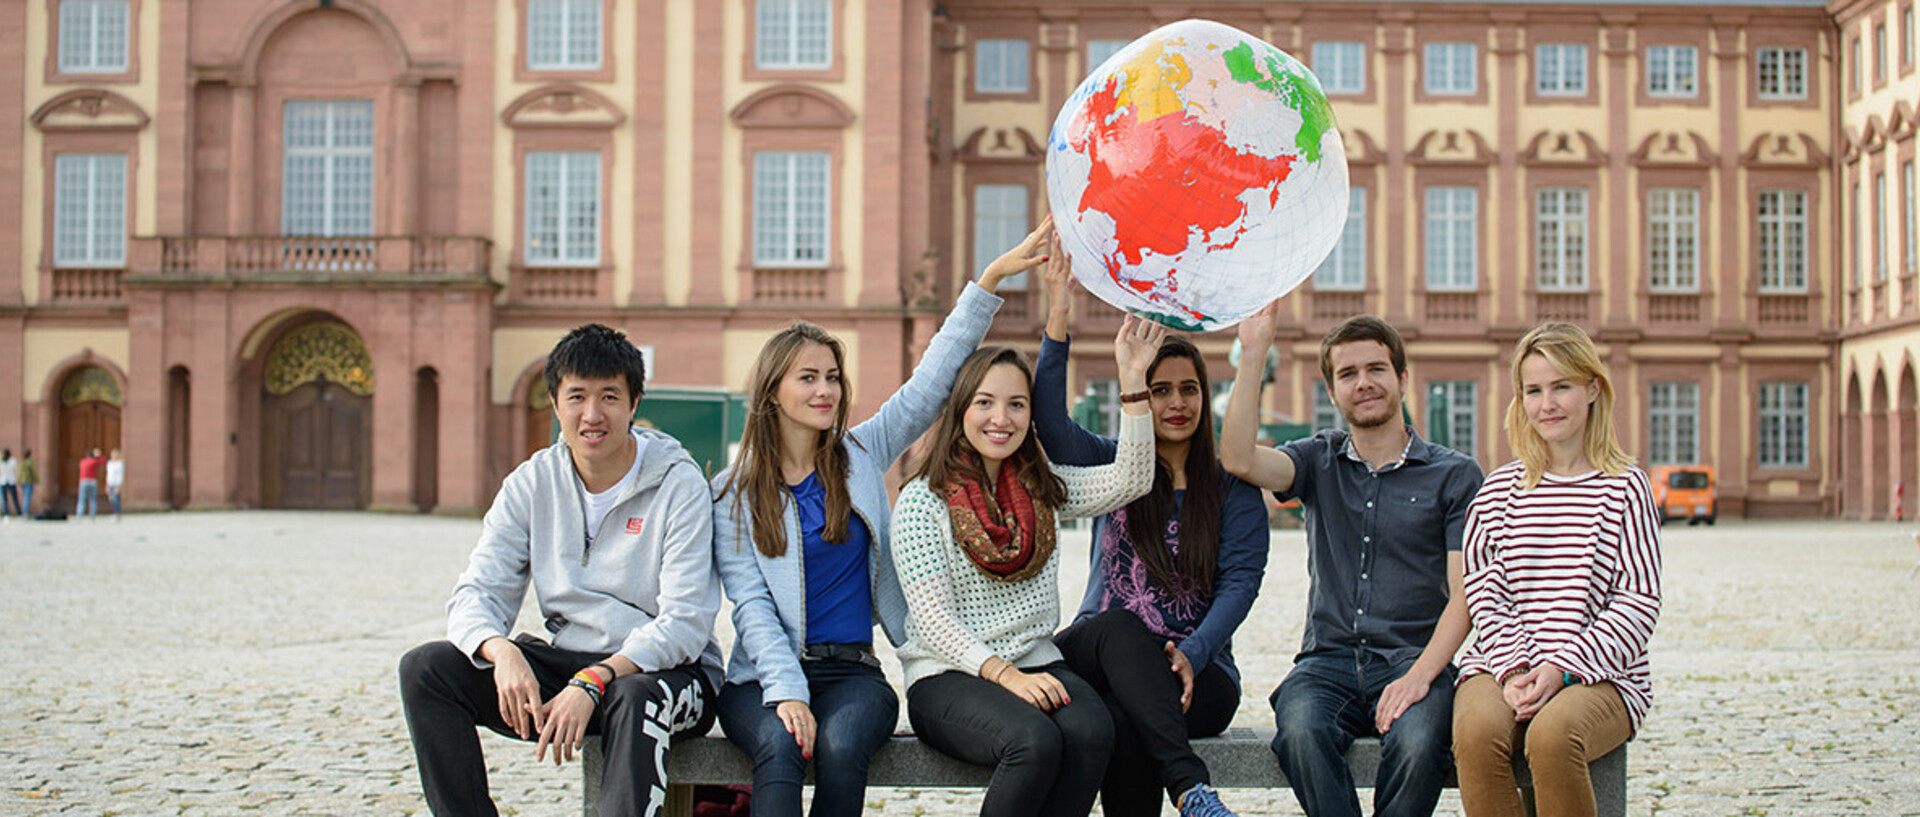 Eine Gruppe Studierender sitz auf einer Bank vor dem Schloss und hält einen aufgeblasenen Globus in die Luft